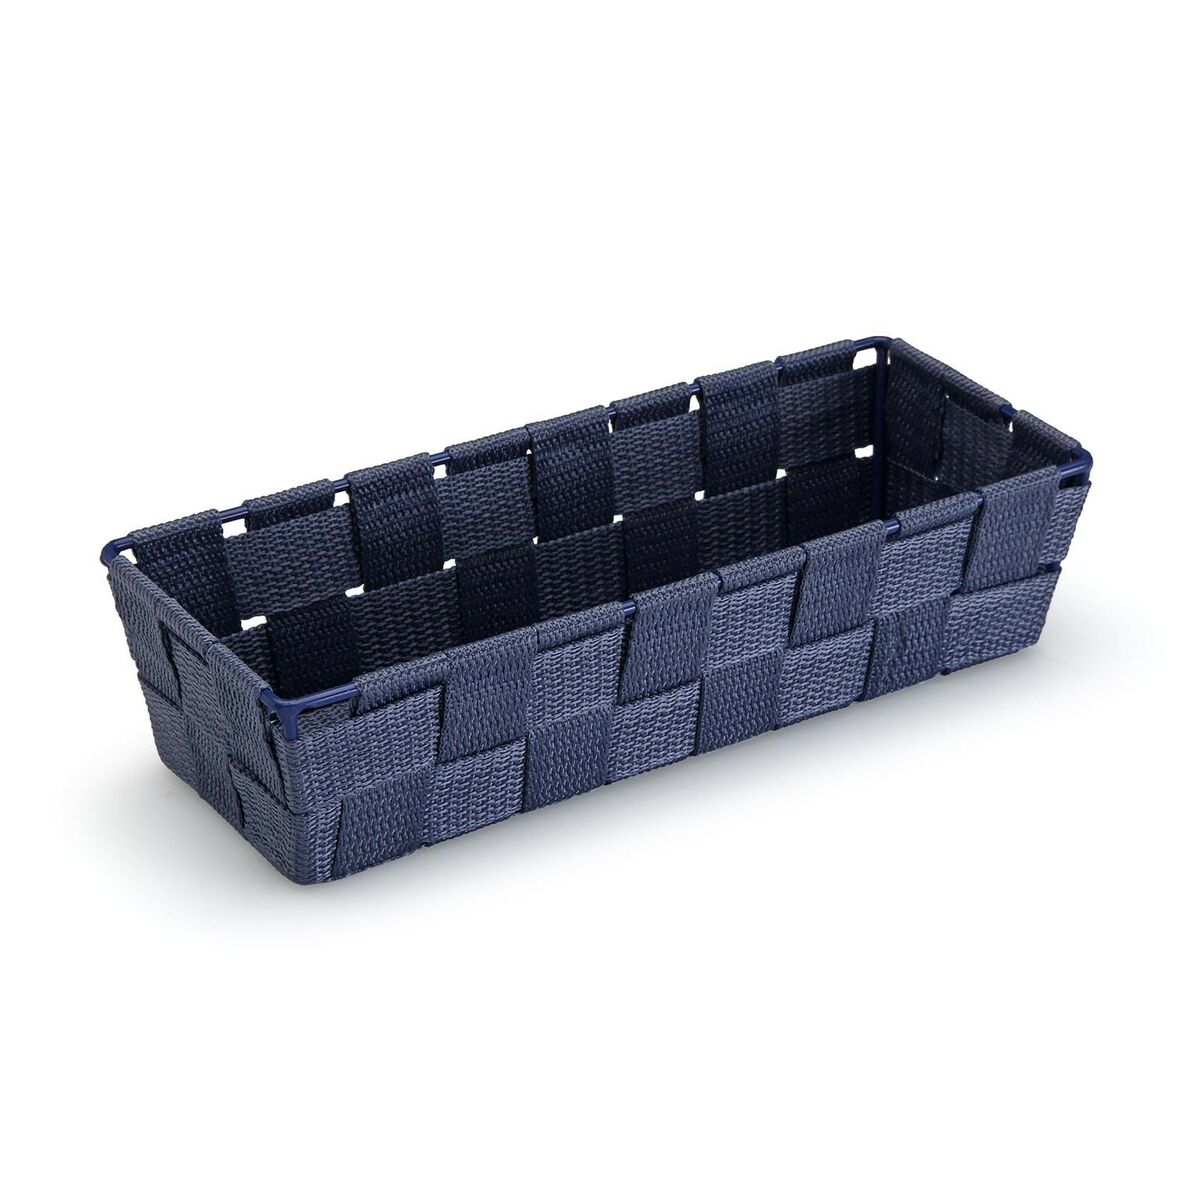 Basket Versa Rectangular Dark blue Textile 10 x 6 x 25 cm